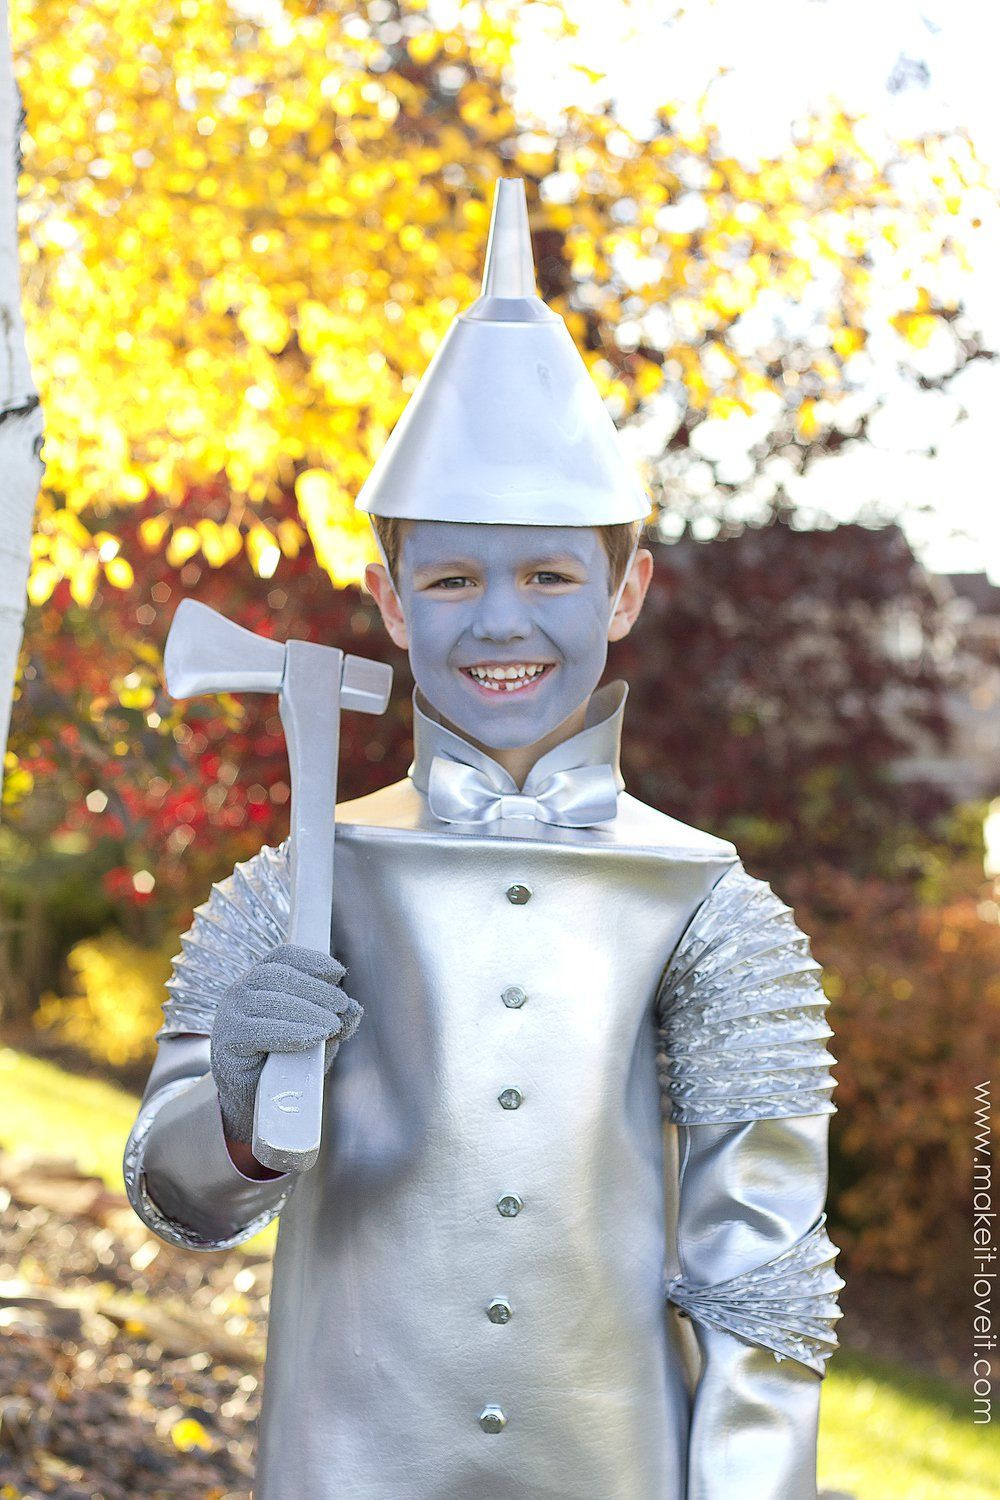 DIY Tin Man Costume
 DIY Tin Man Costume from Wizard of Oz